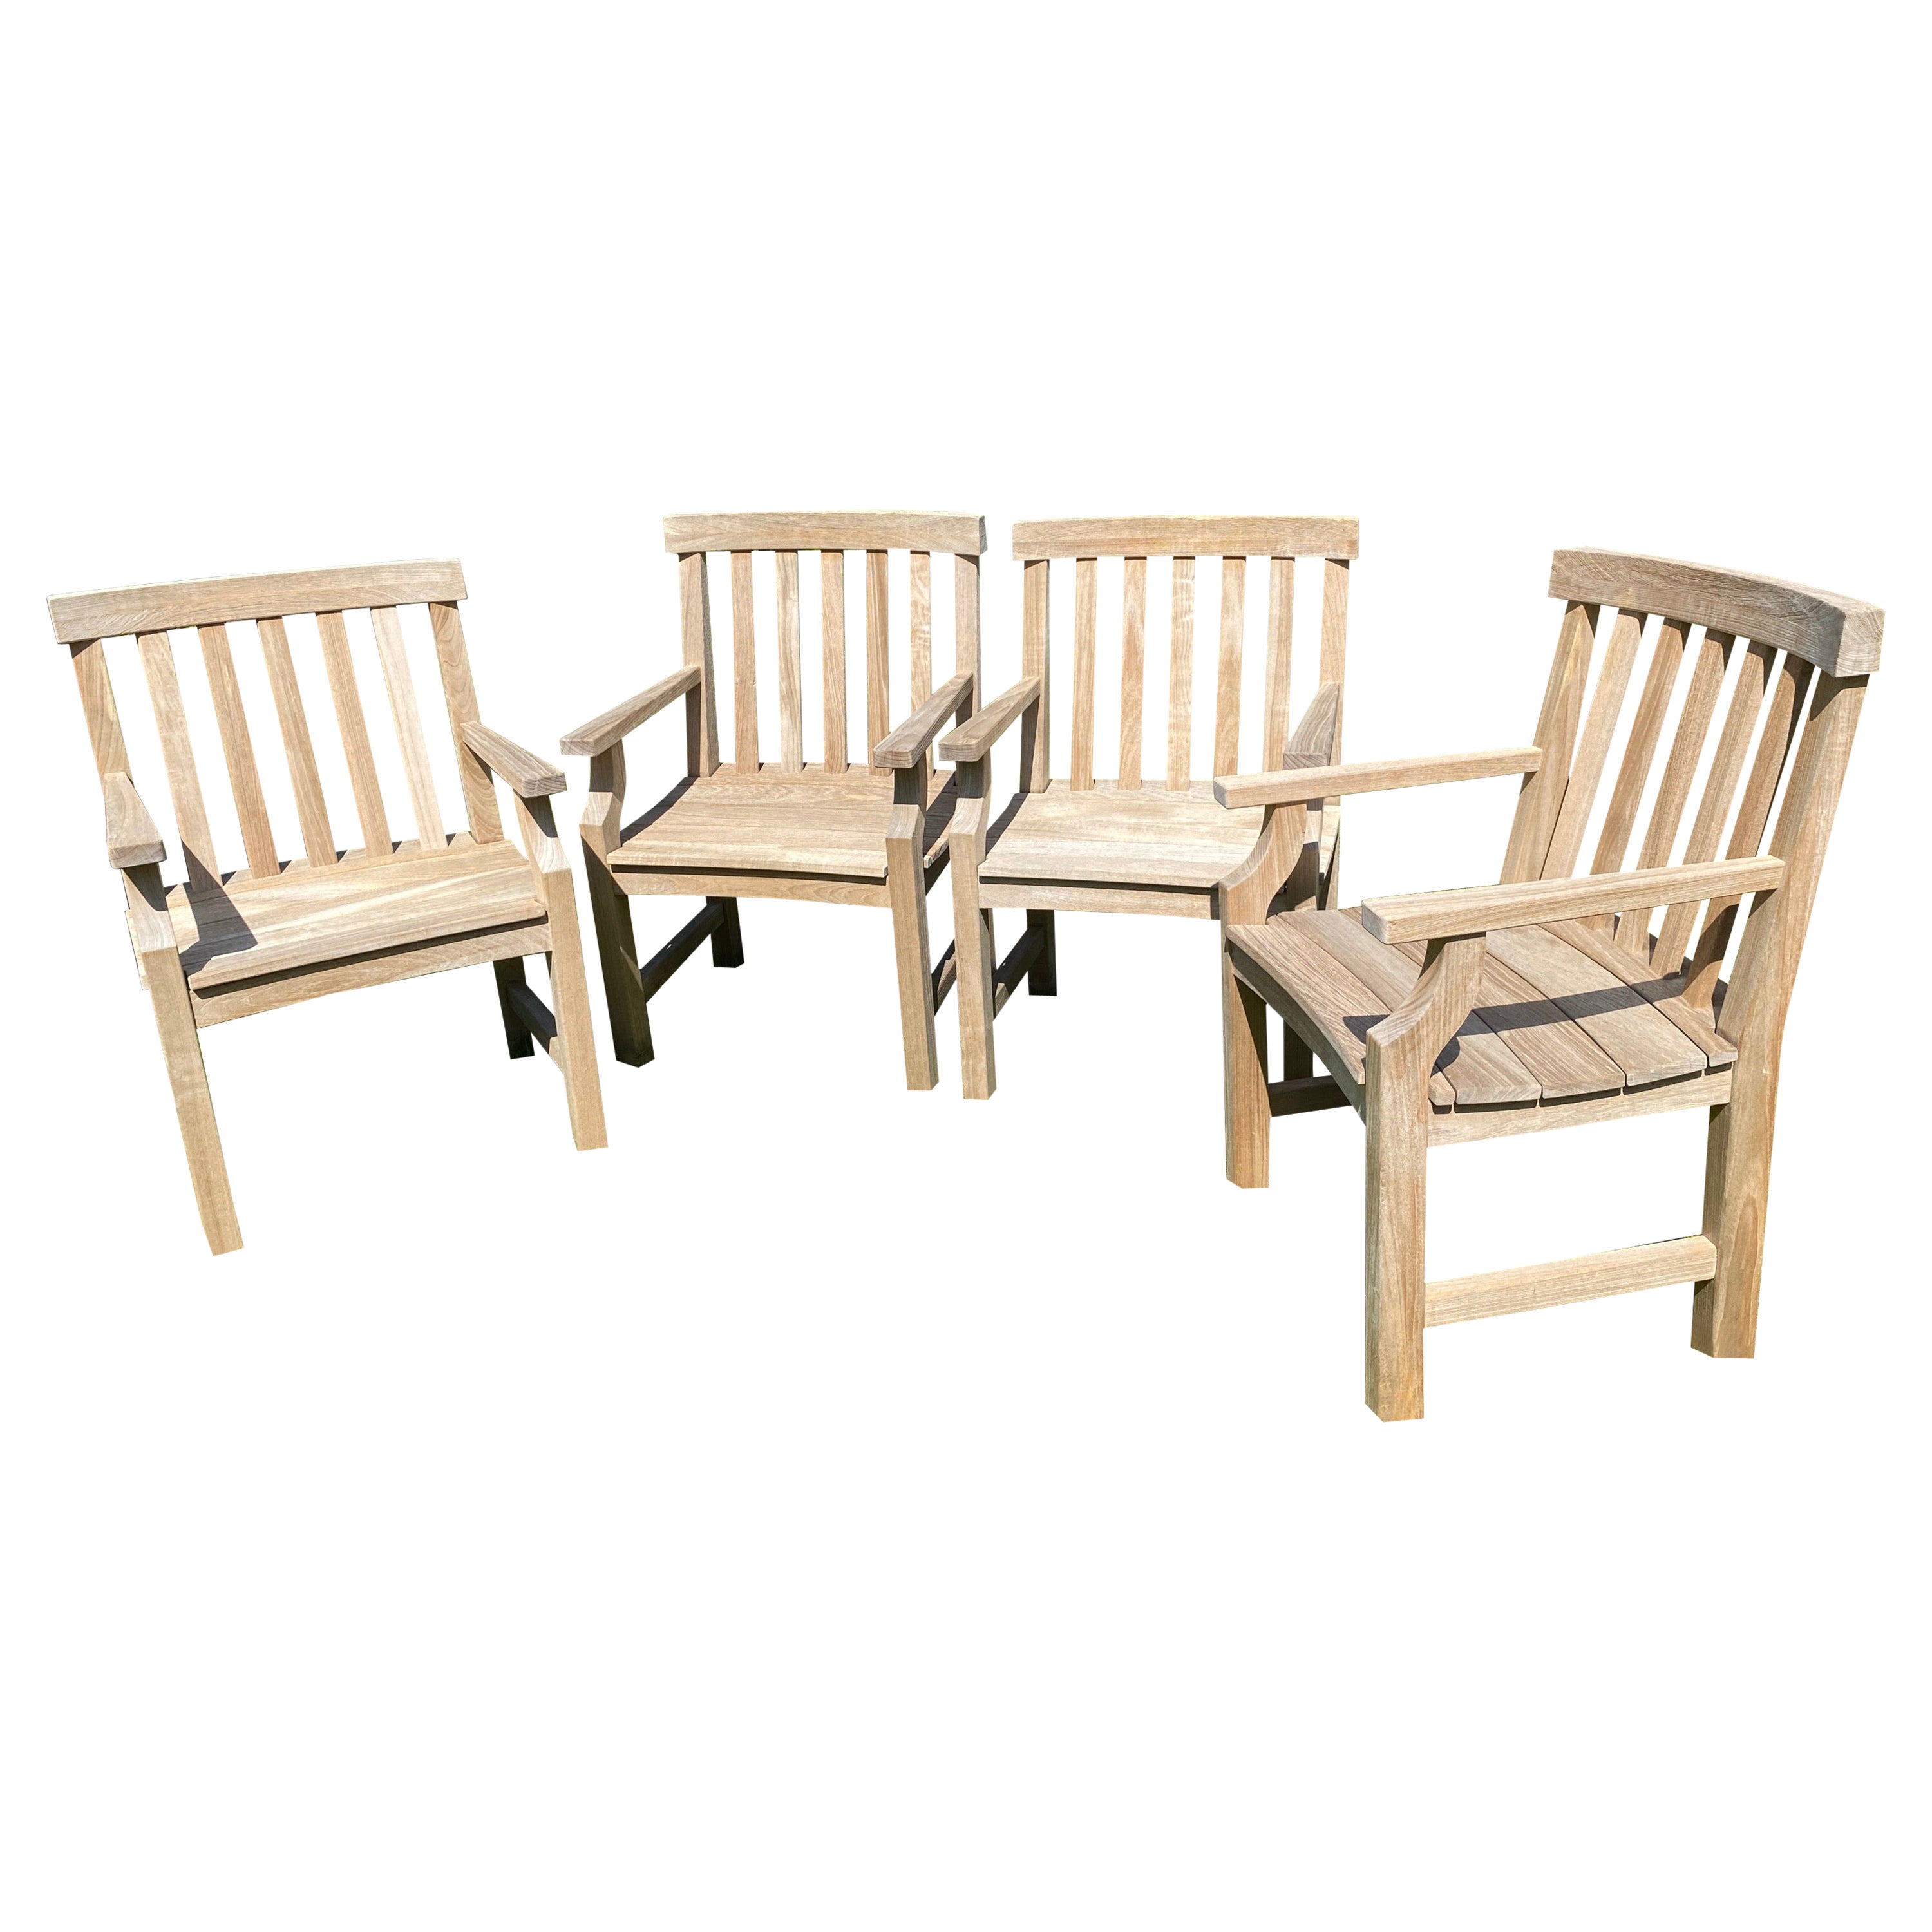 4 Teak Wood Outdoor Garden Dining Chairs